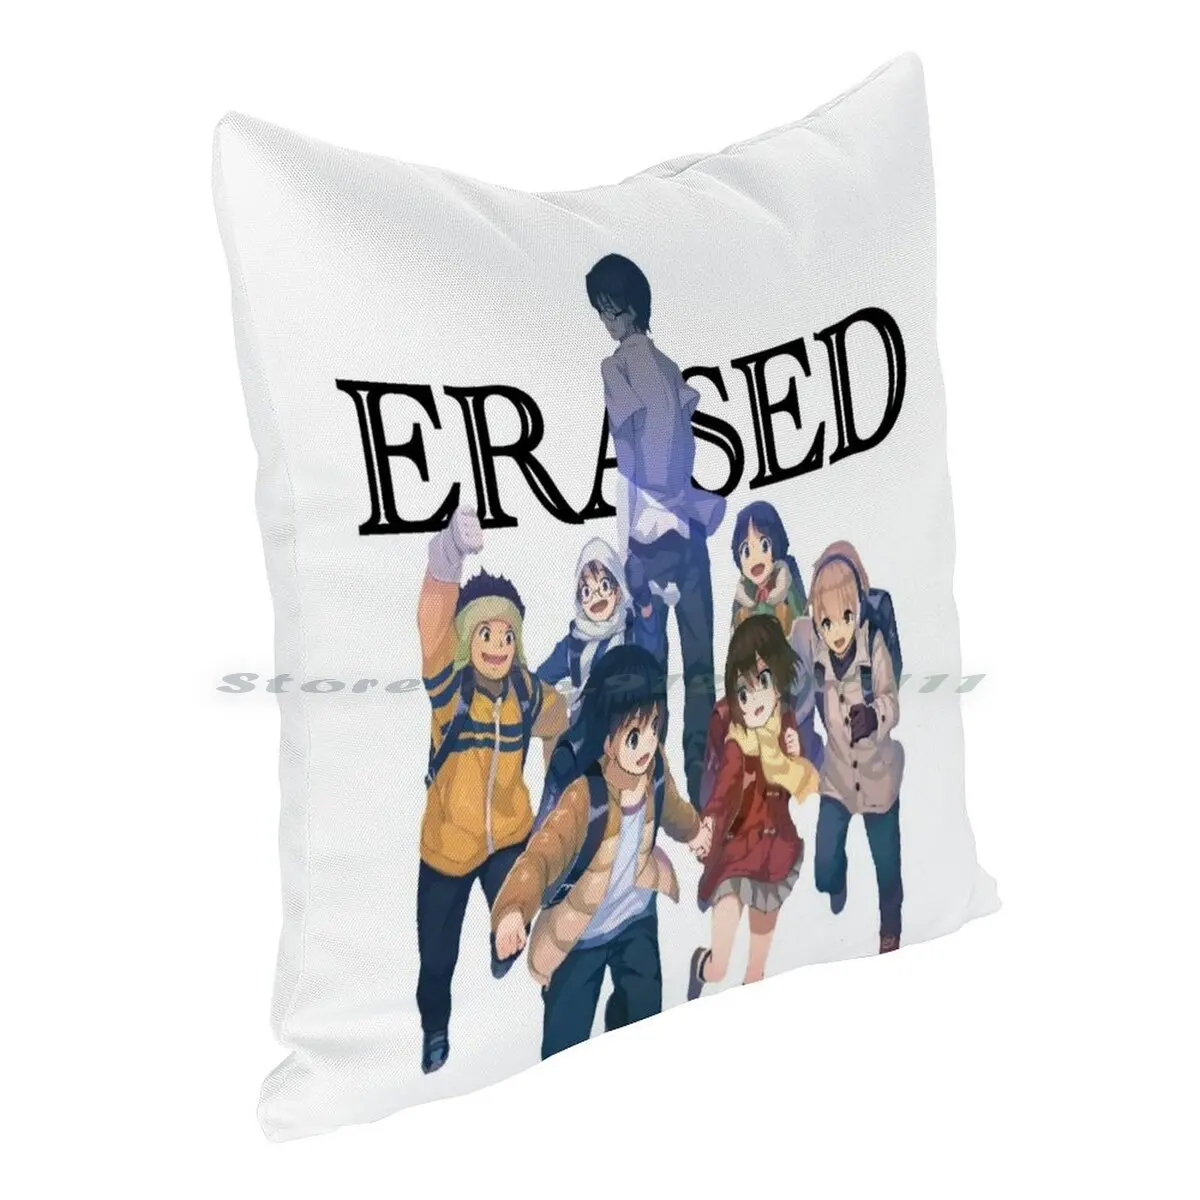 Anime Sad Erased Pillow Case Throw Pillow Cover Cotton Linen Flax Erased  Character Erased Anime Erased Logo Erased Manga - AliExpress